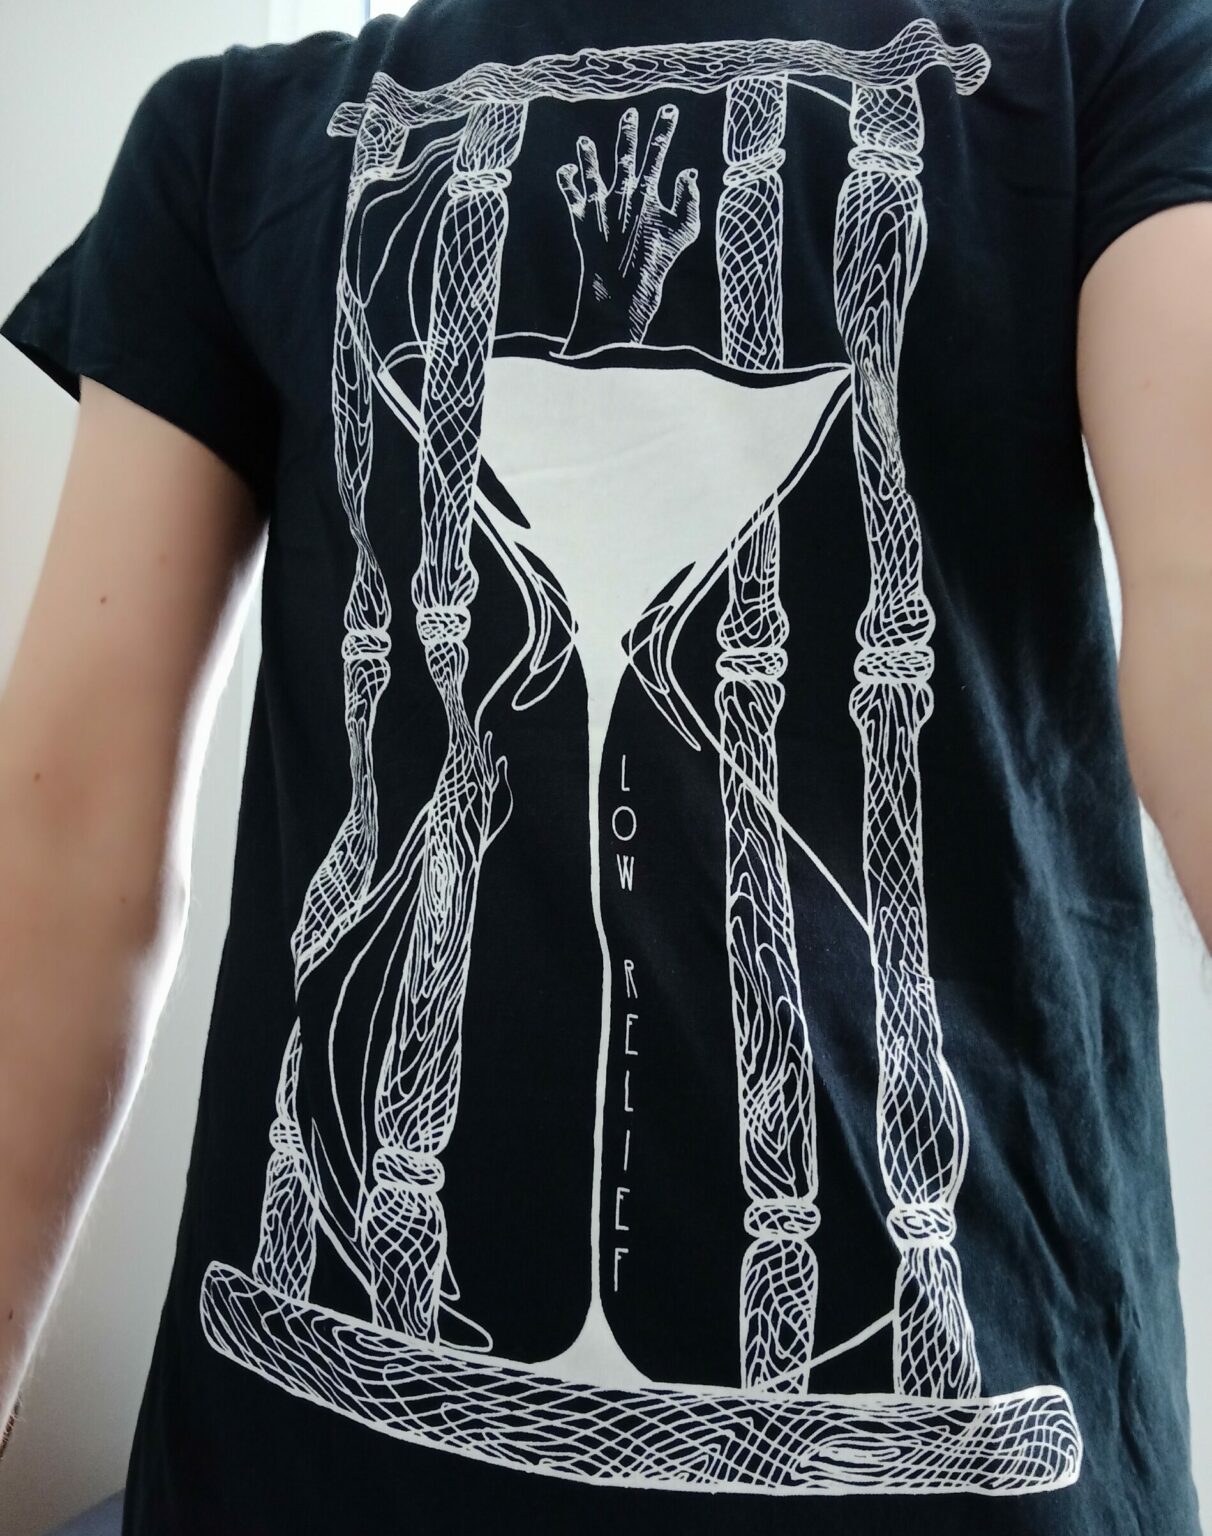 Machins trucs chouettes - Anne T-shirt groupe Low Relief, noir sur blanc, sablier qui s'écoule, main, motif du bois